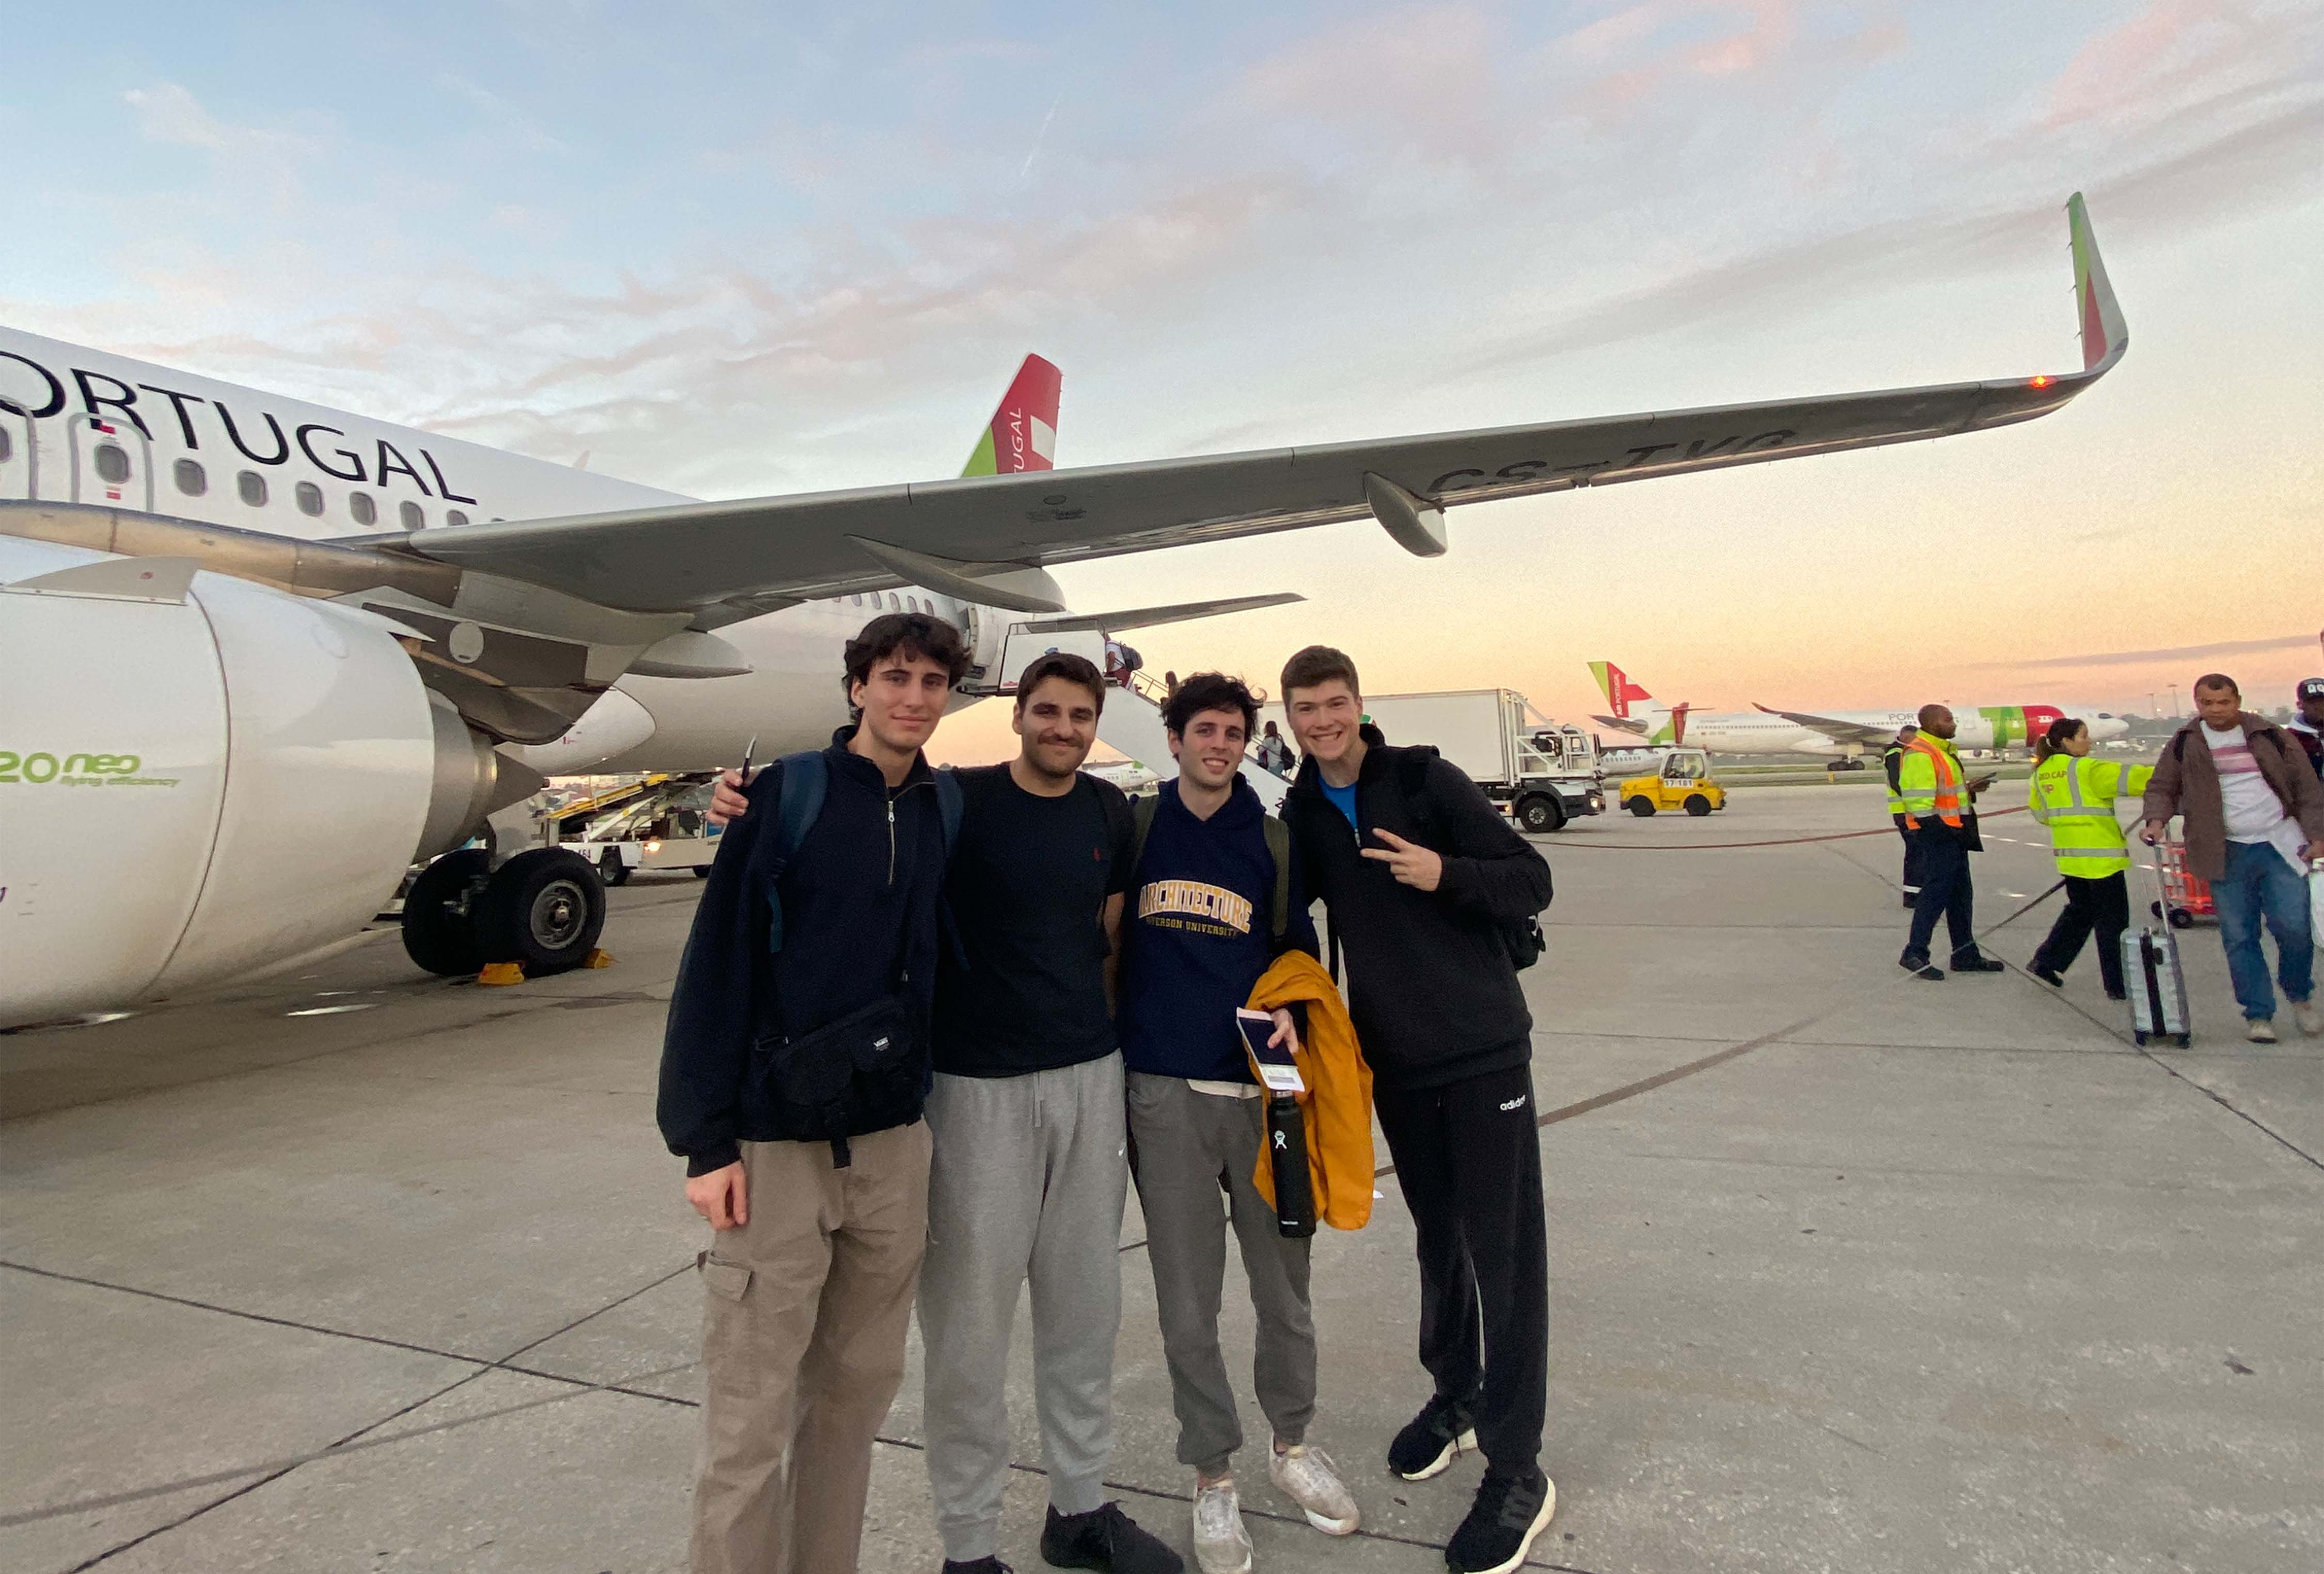 Undergraduate students Ariel Weiss, Jake Levy, Jake Kroft, and Luke De Bartolo posing in front of a plane.